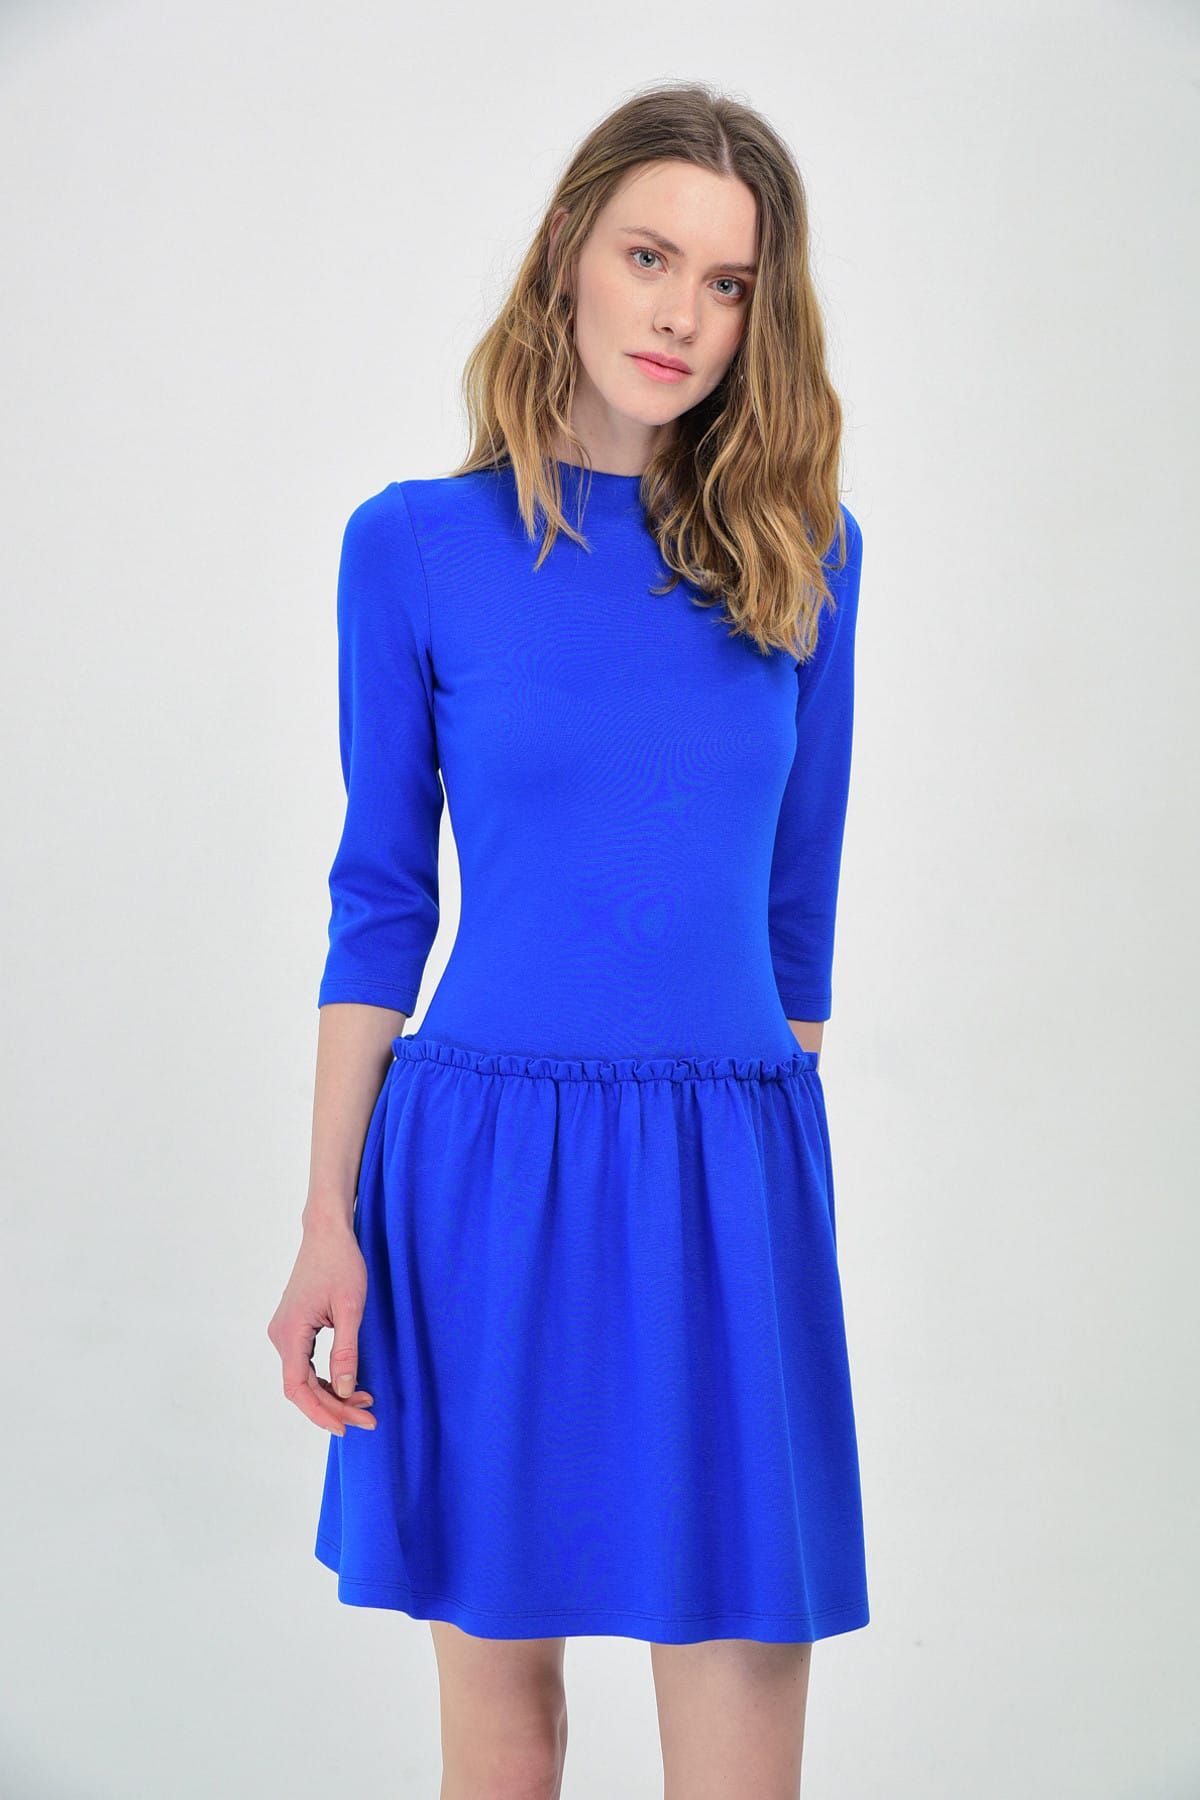 Hanna's Kadın Mavi Fırfır Detaylı Uzun Kollu Örme Elbise Hn1303